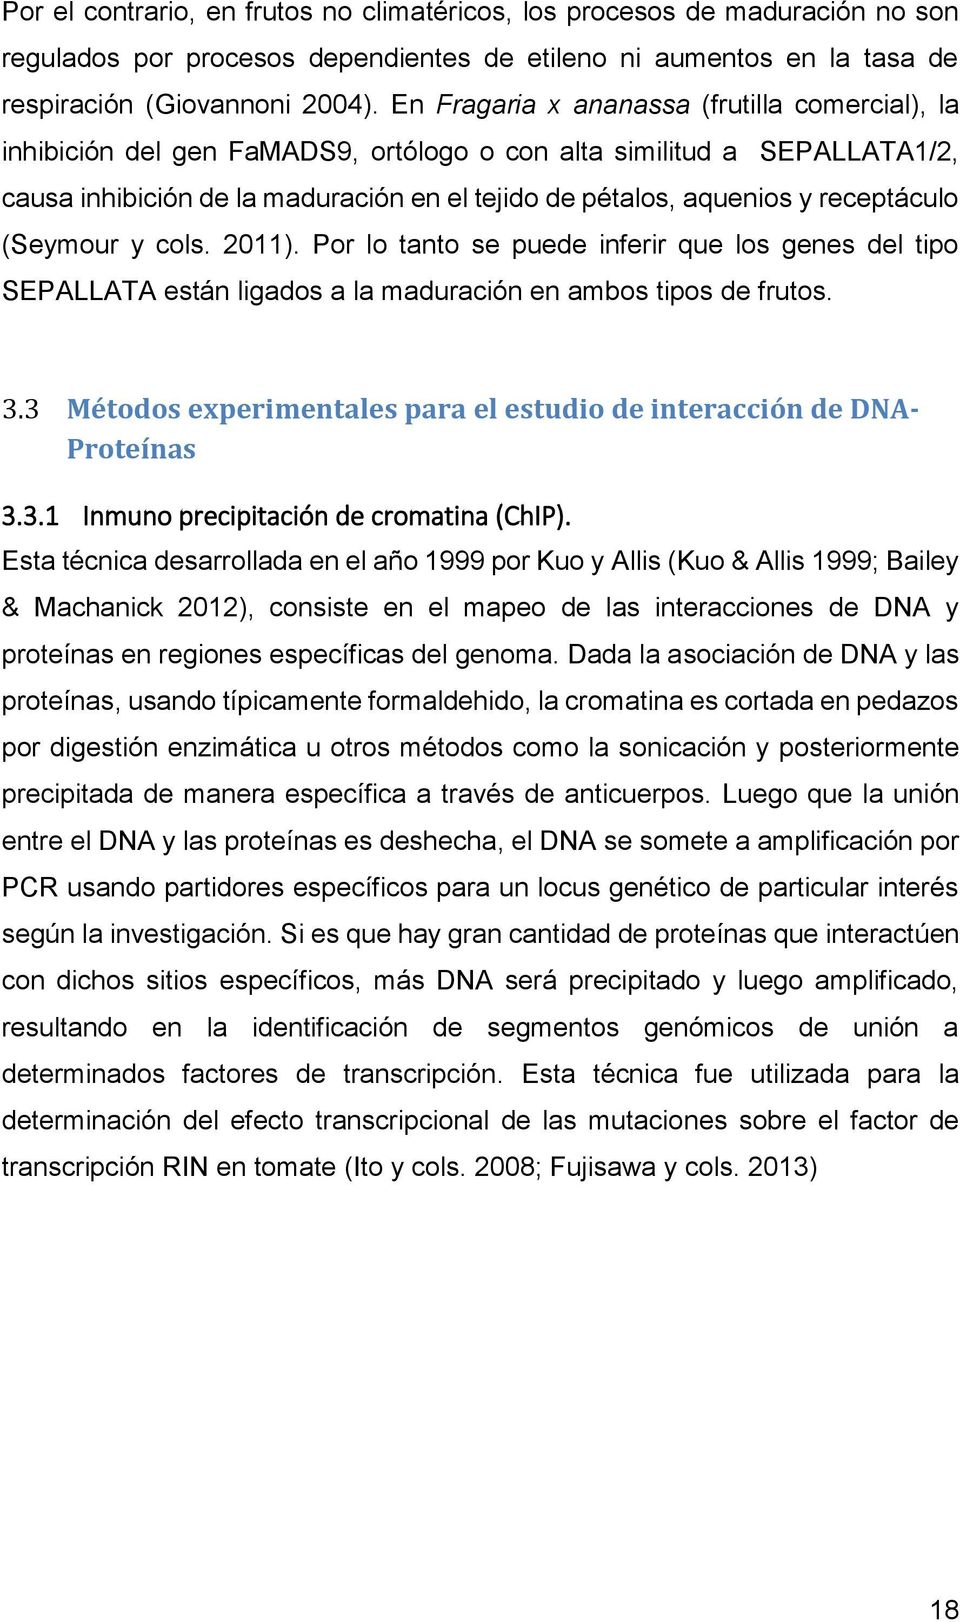 receptáculo (Seymour y cols. 2011). Por lo tanto se puede inferir que los genes del tipo SEPALLATA están ligados a la maduración en ambos tipos de frutos. 3.